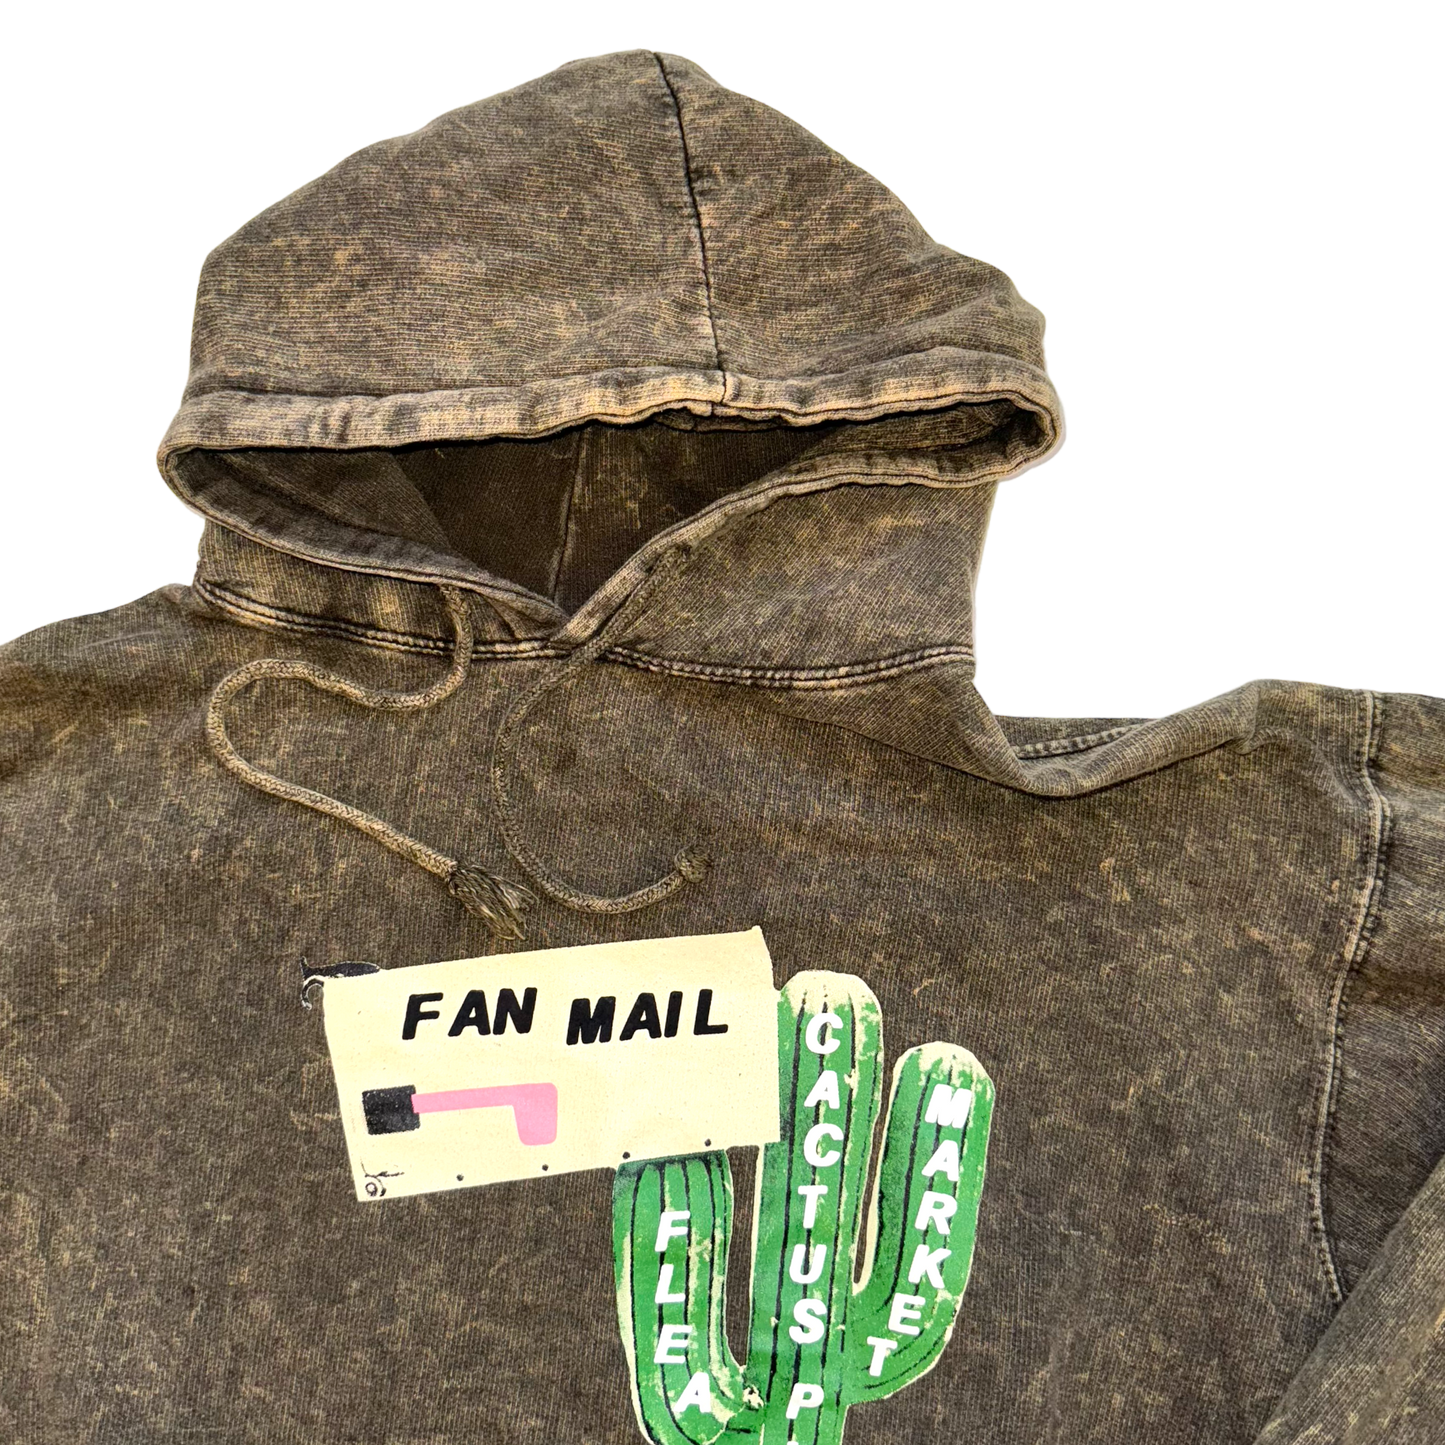 Cactus Plant Flea Market - Fan Mail 2016 Limited Dye Washed Hoodie Sweatshirt